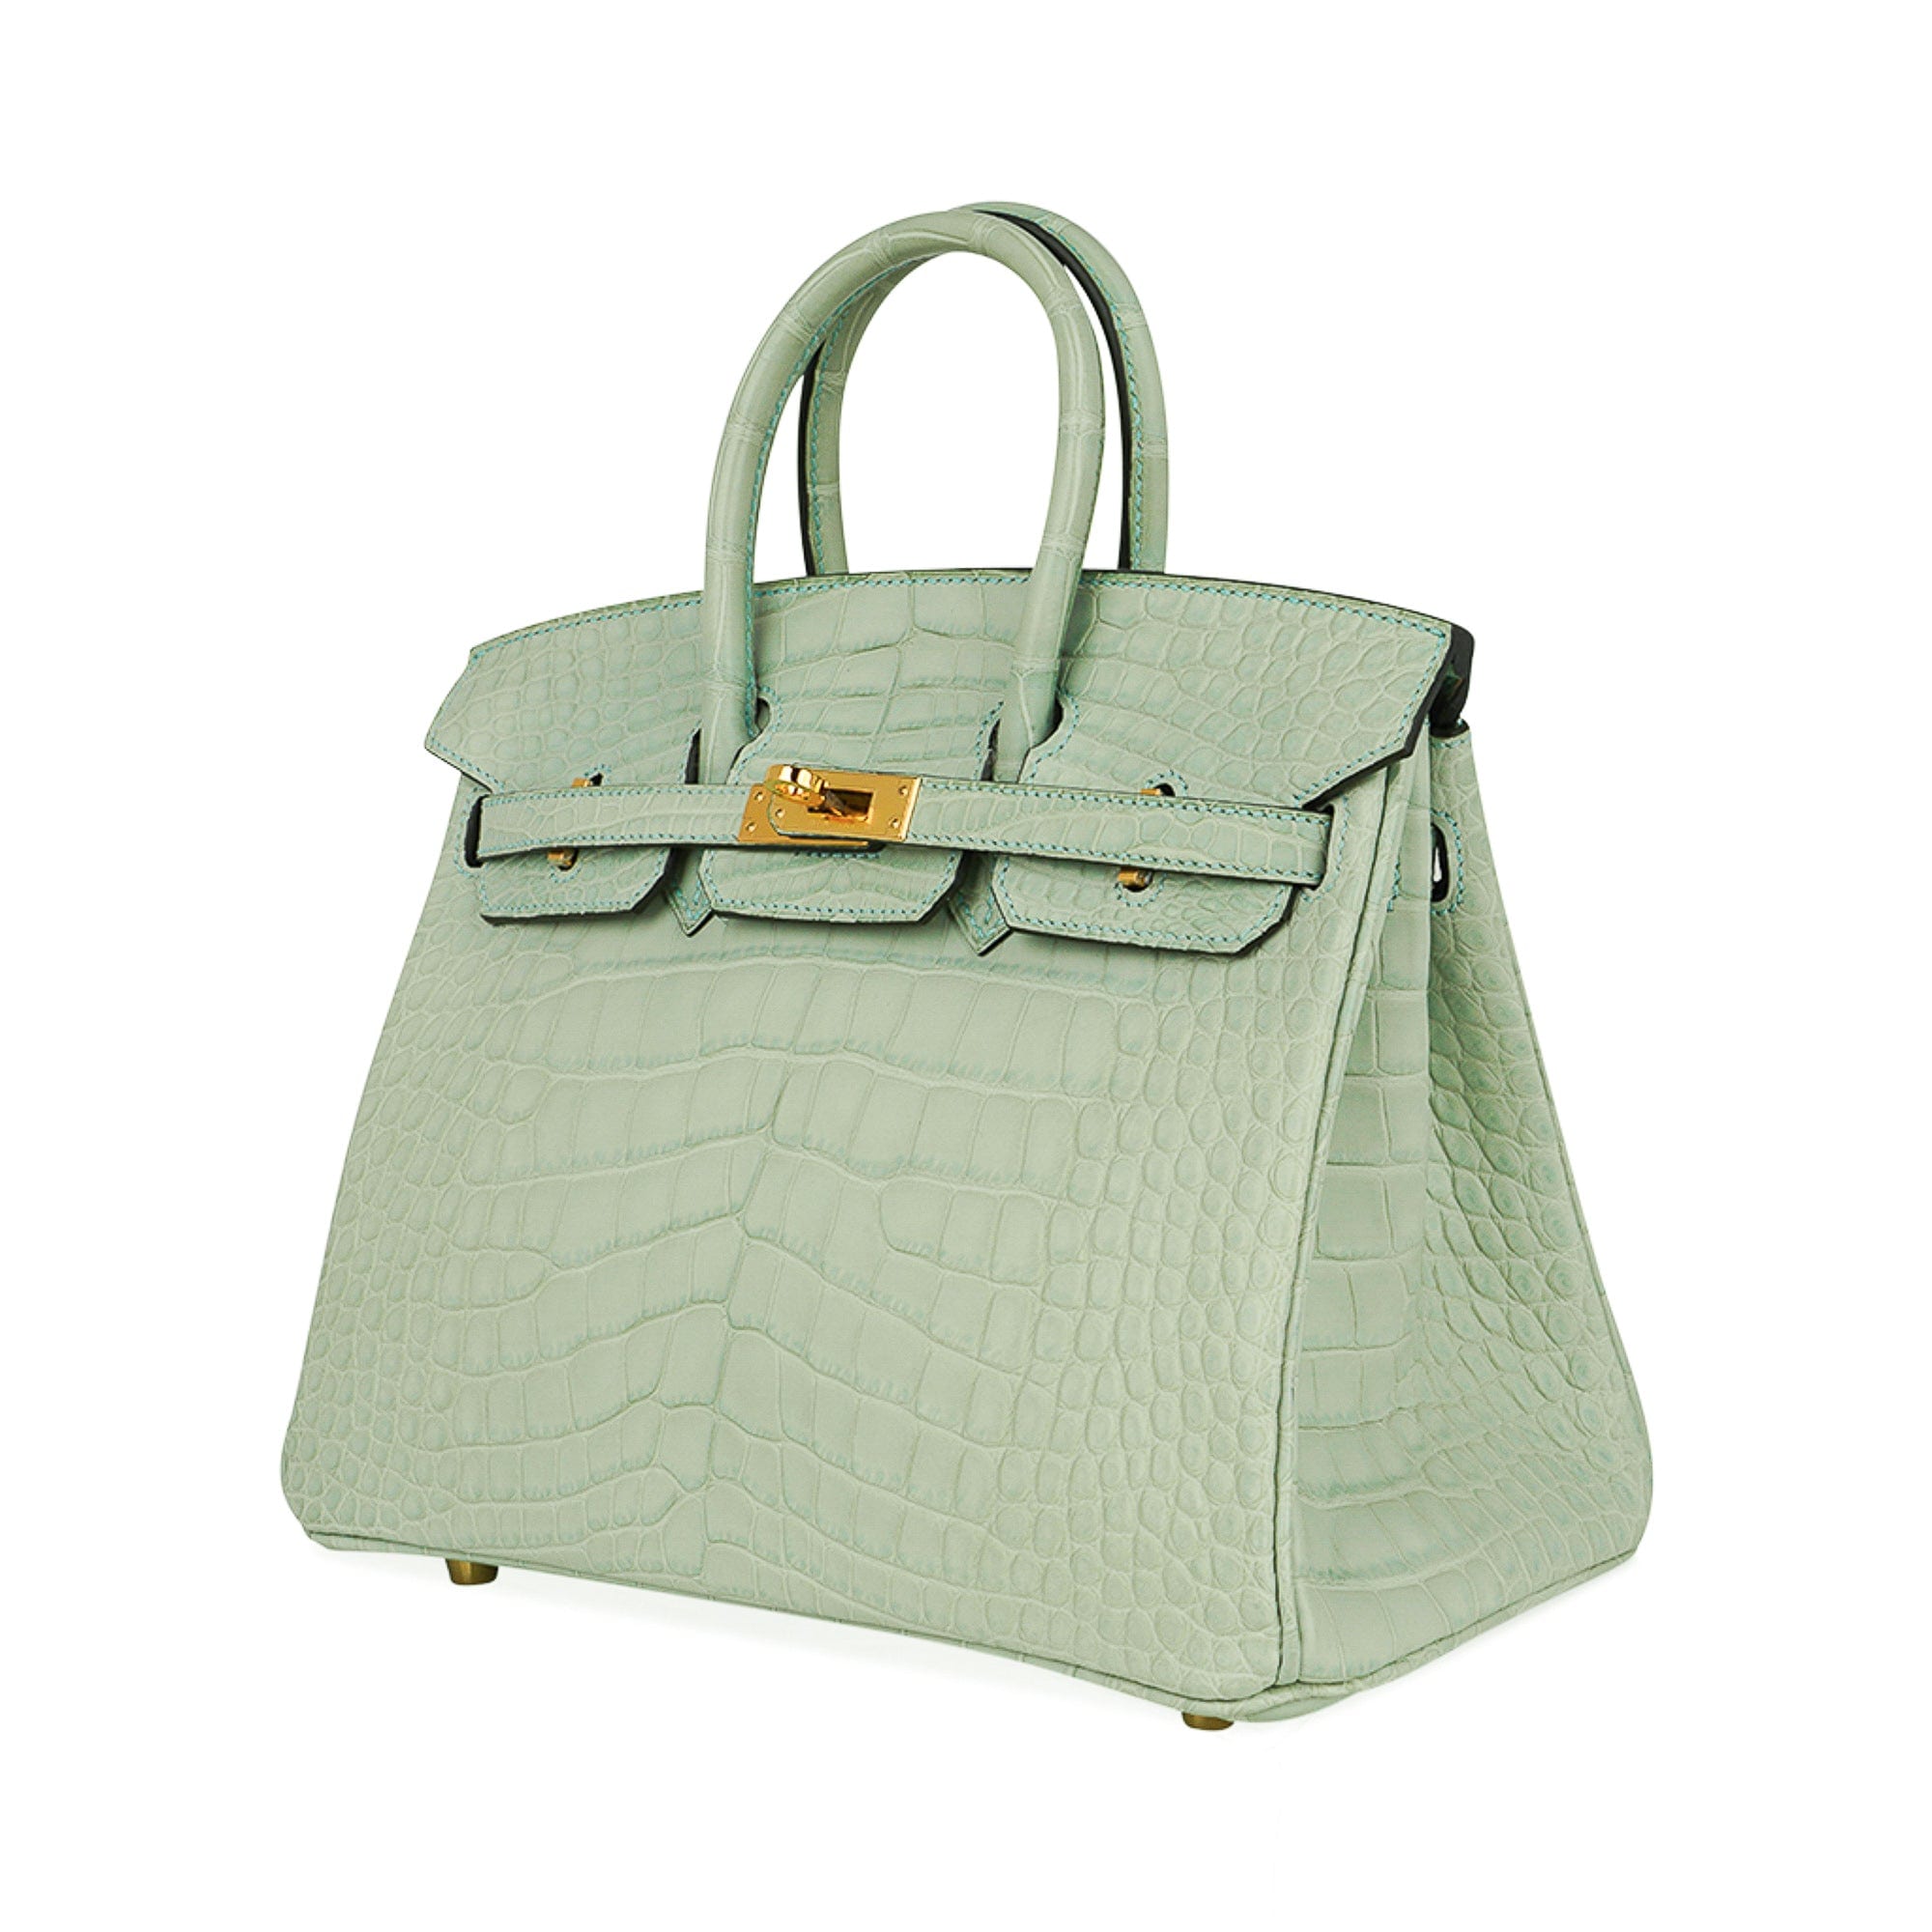 Hermès Birkin Alligator matt 6U Mint green 25cm - lushenticbags